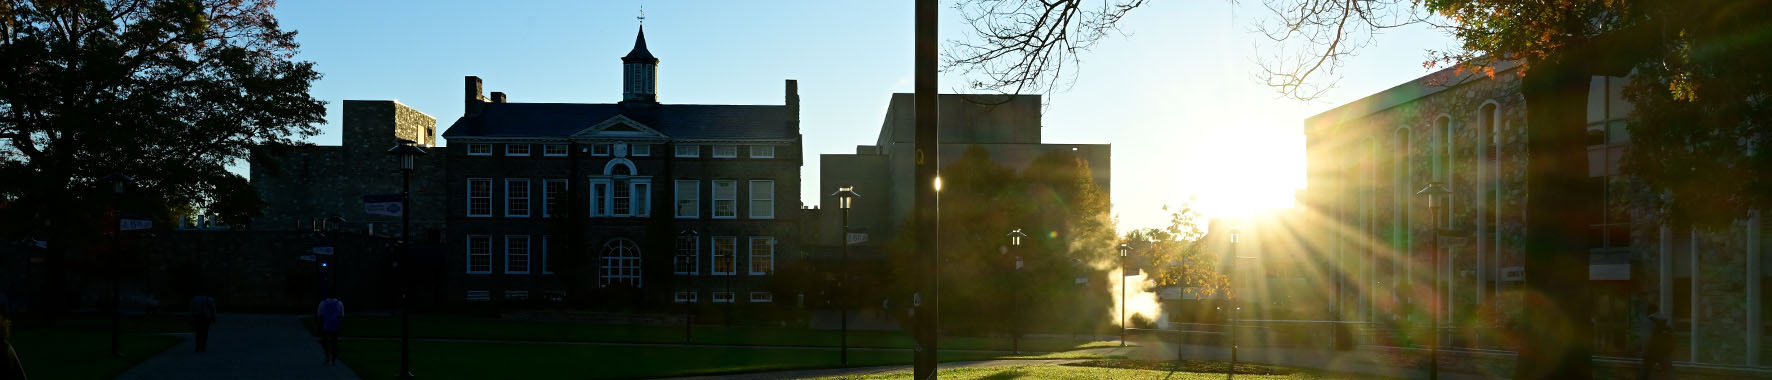 academic quad against sunrise